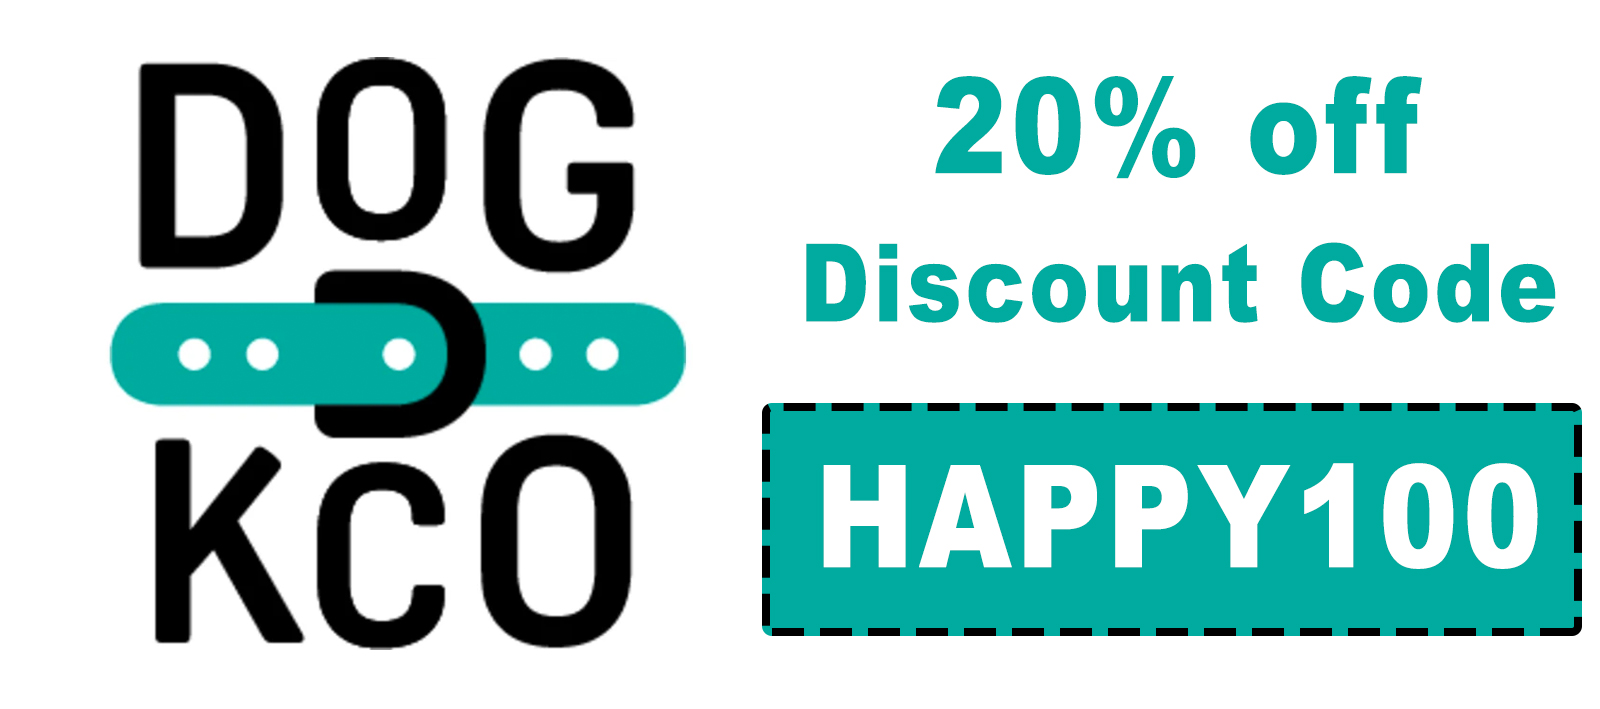 Dogkco Discount Code | 20% off code: HAPPY100